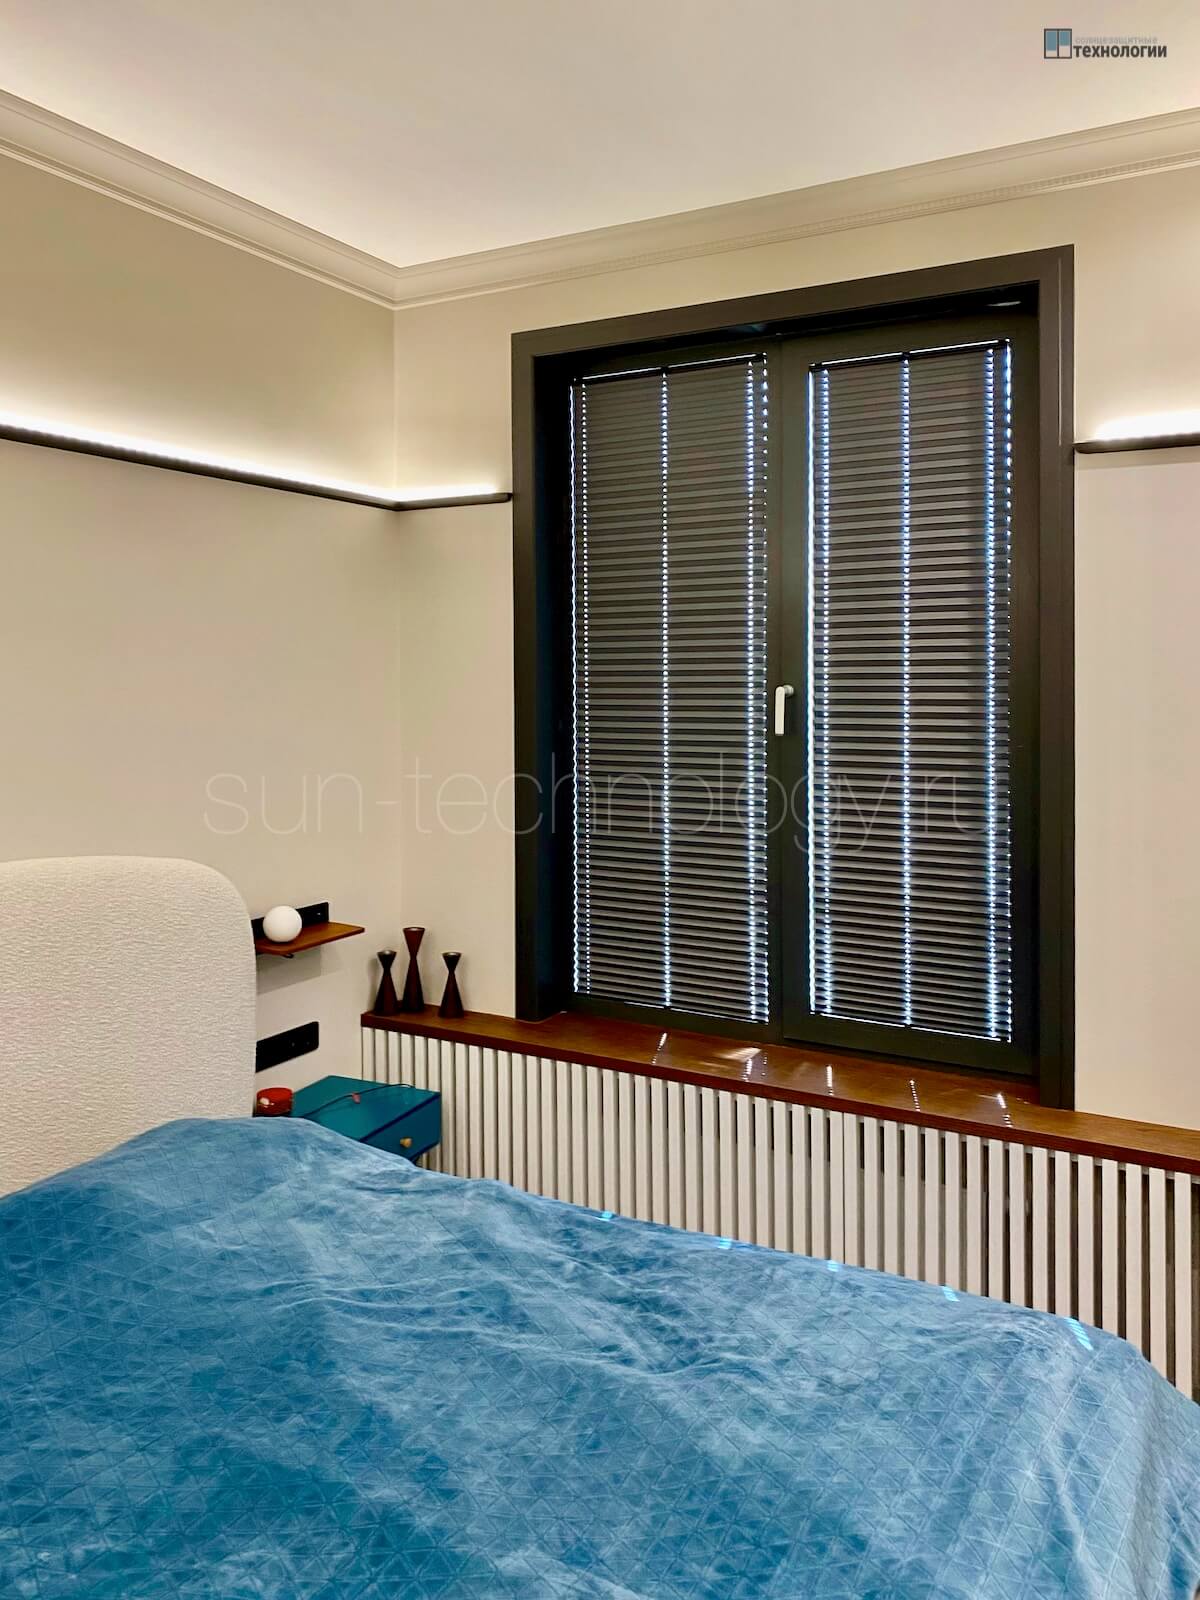 Шторы плиссе с тканью Блэкаут в спальне в ЖК " Shome", черная комплектация